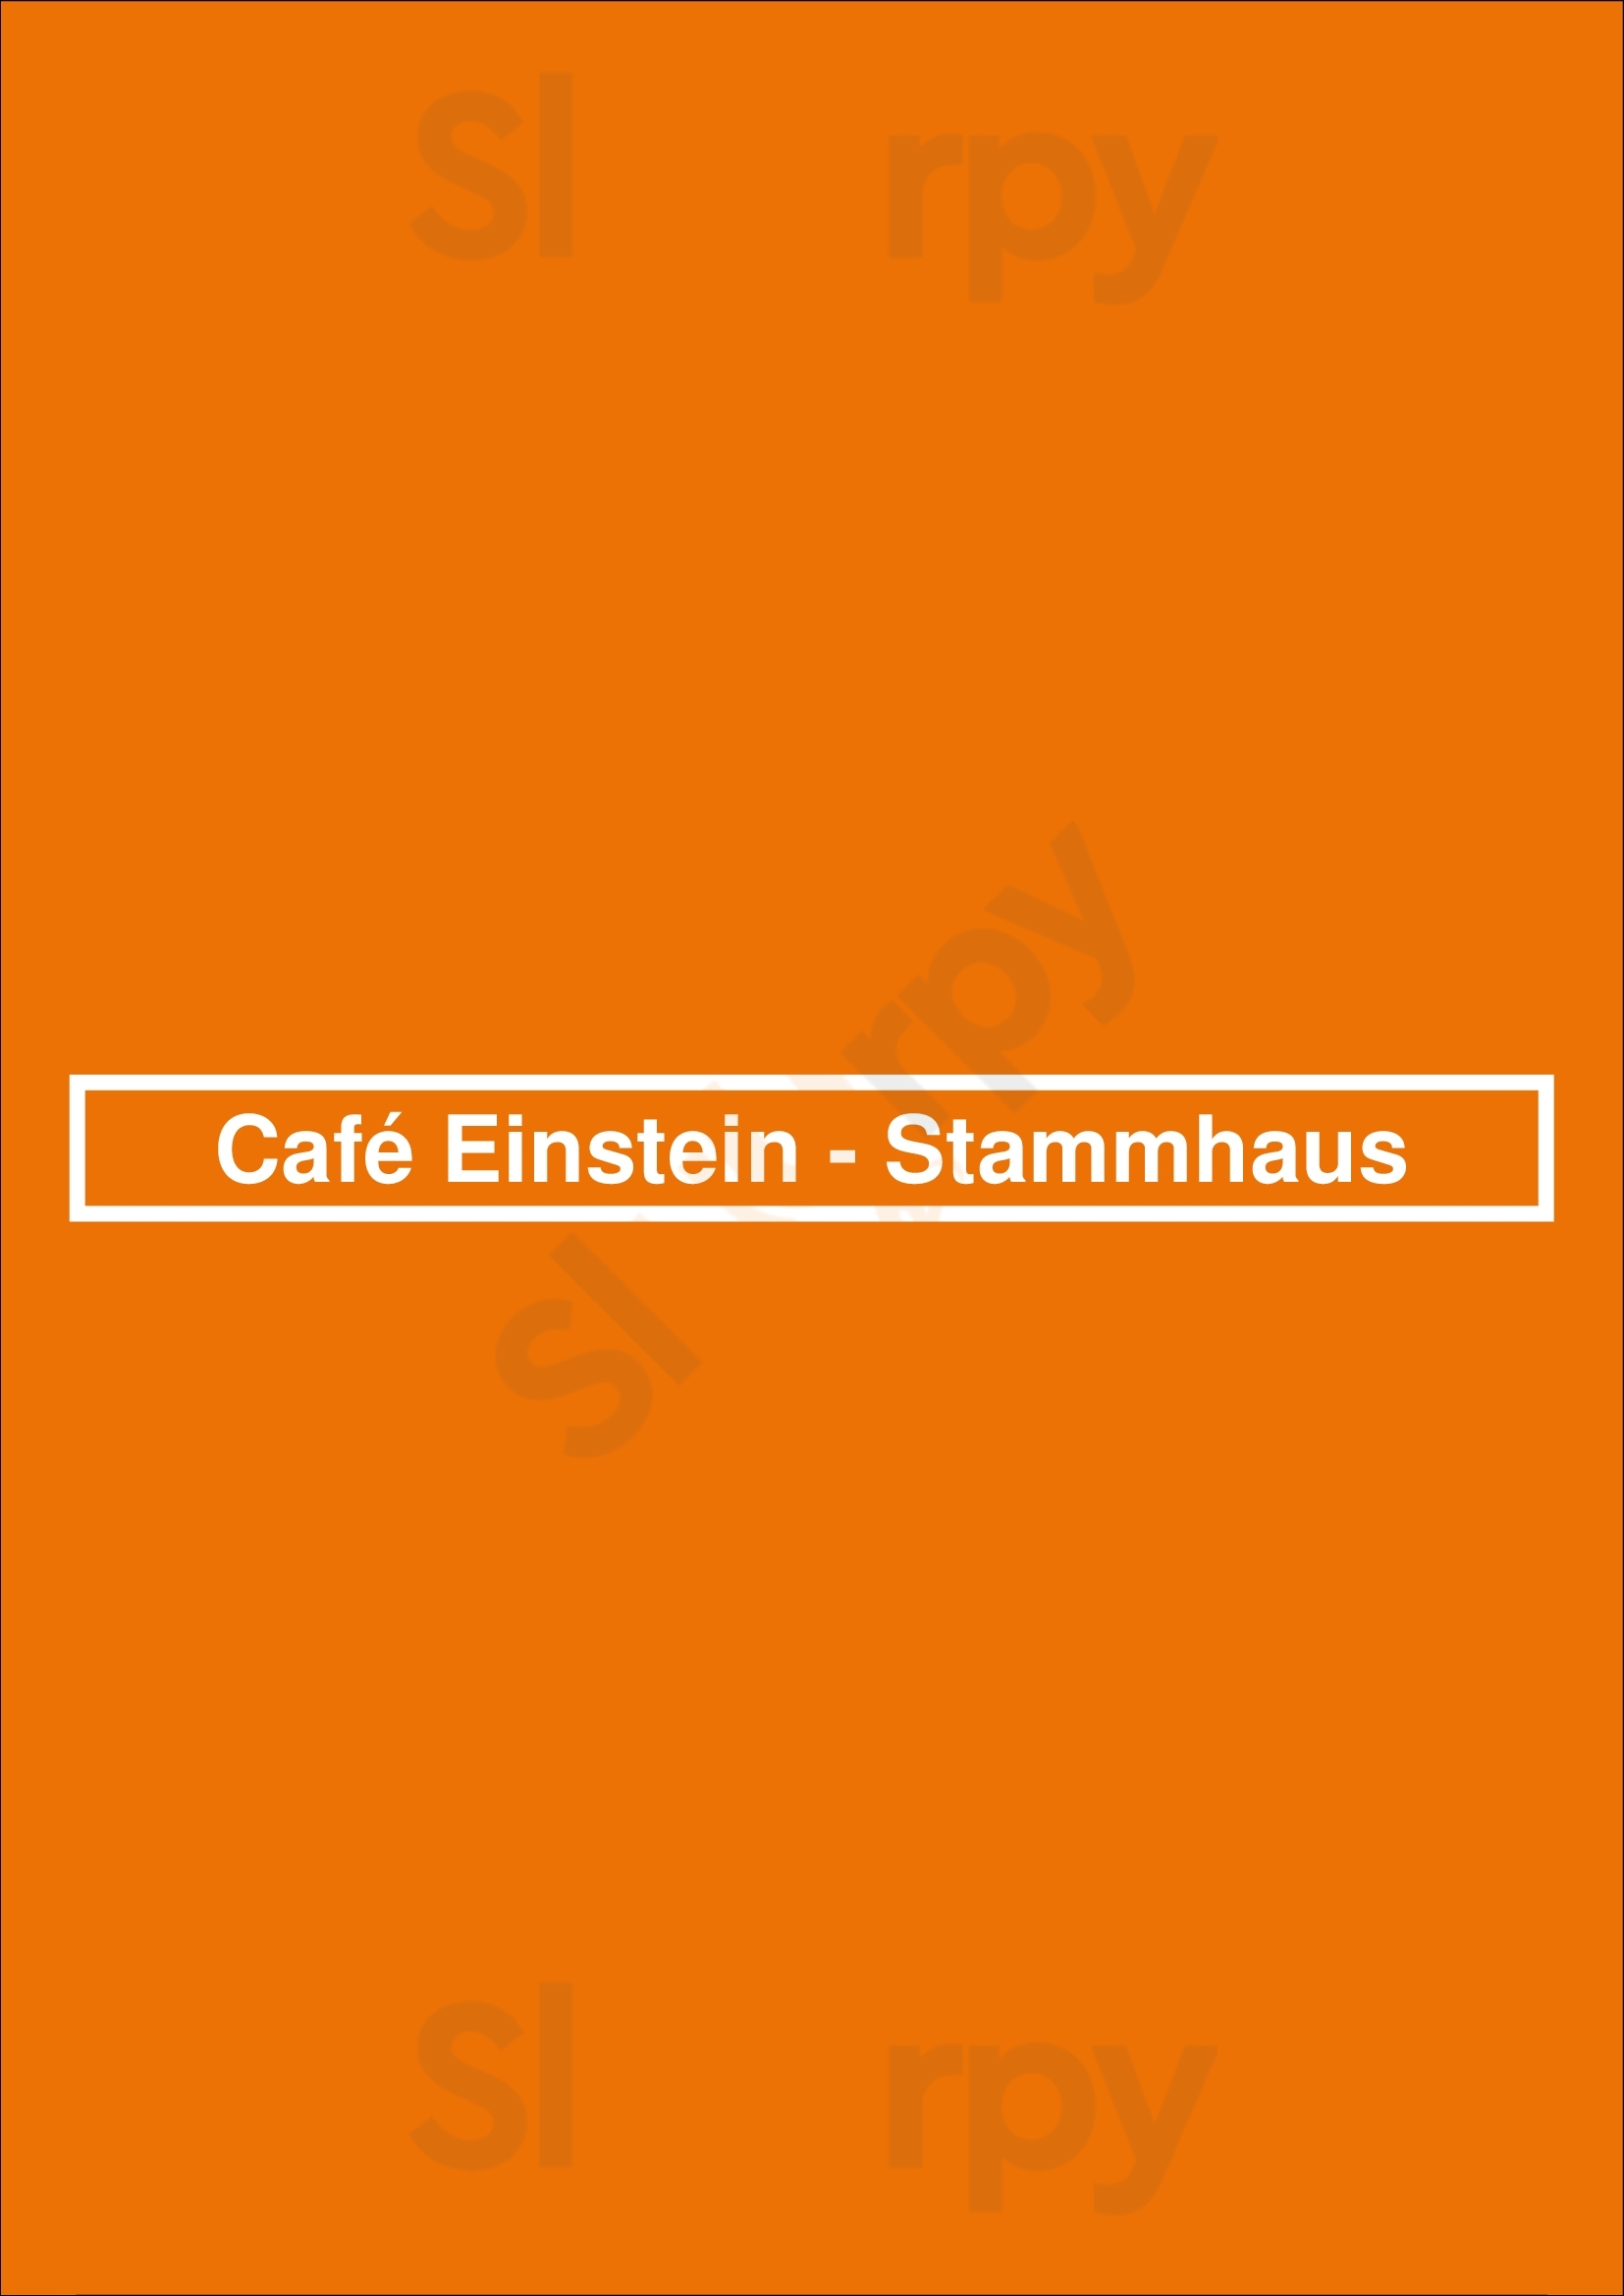 Café Einstein - Stammhaus Berlin Menu - 1